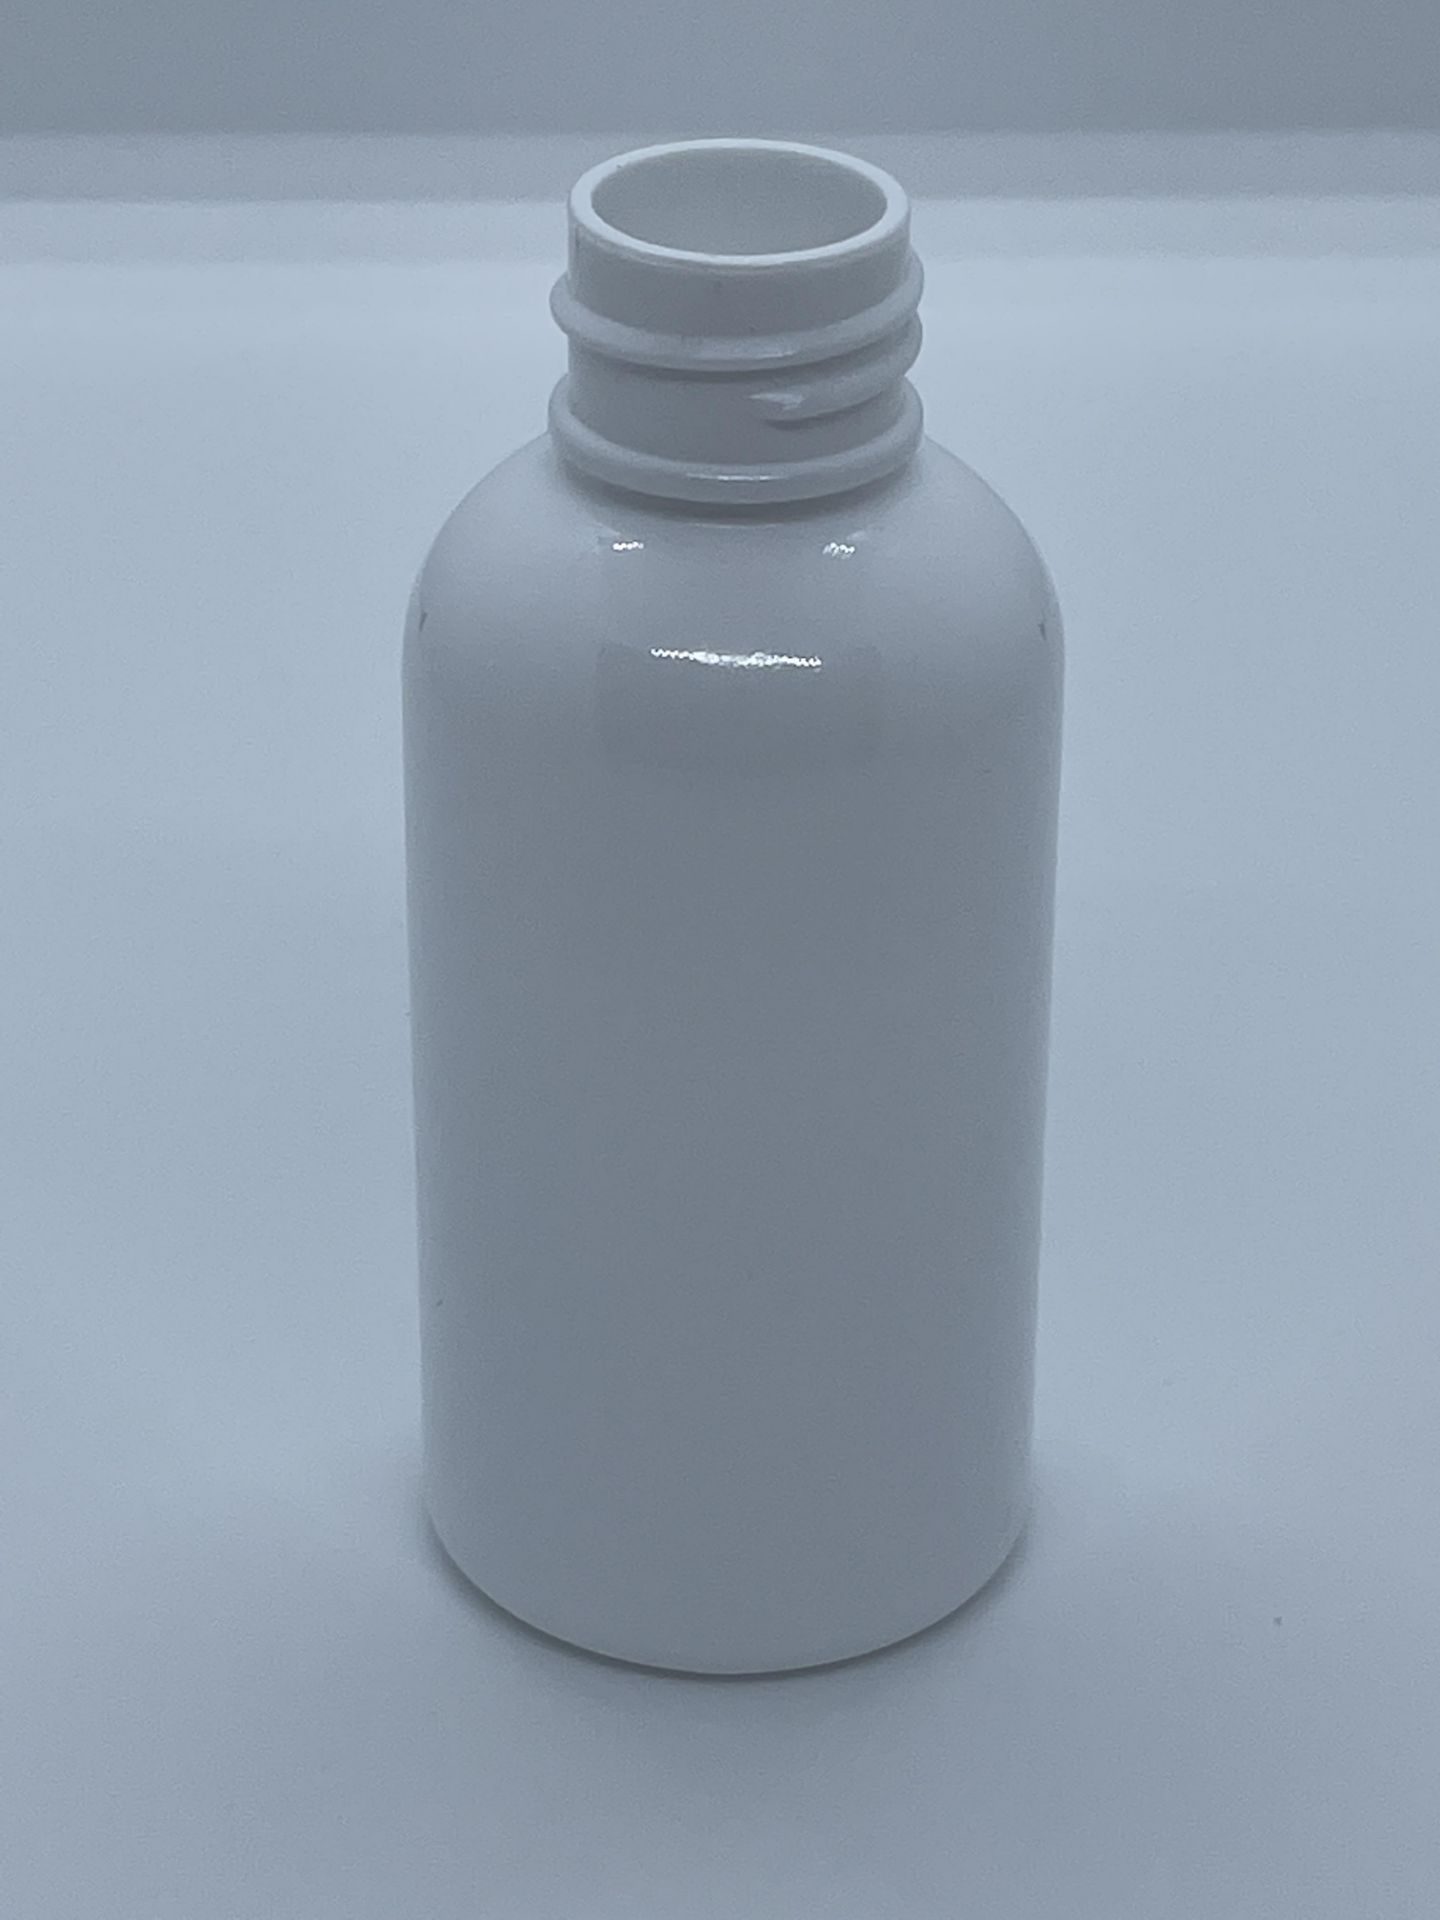 32,000 - White Plastic Bullet 2 oz Empty Bottles, 20-410 Threading Neck, 3.25" Tall, 1.25" Diameter